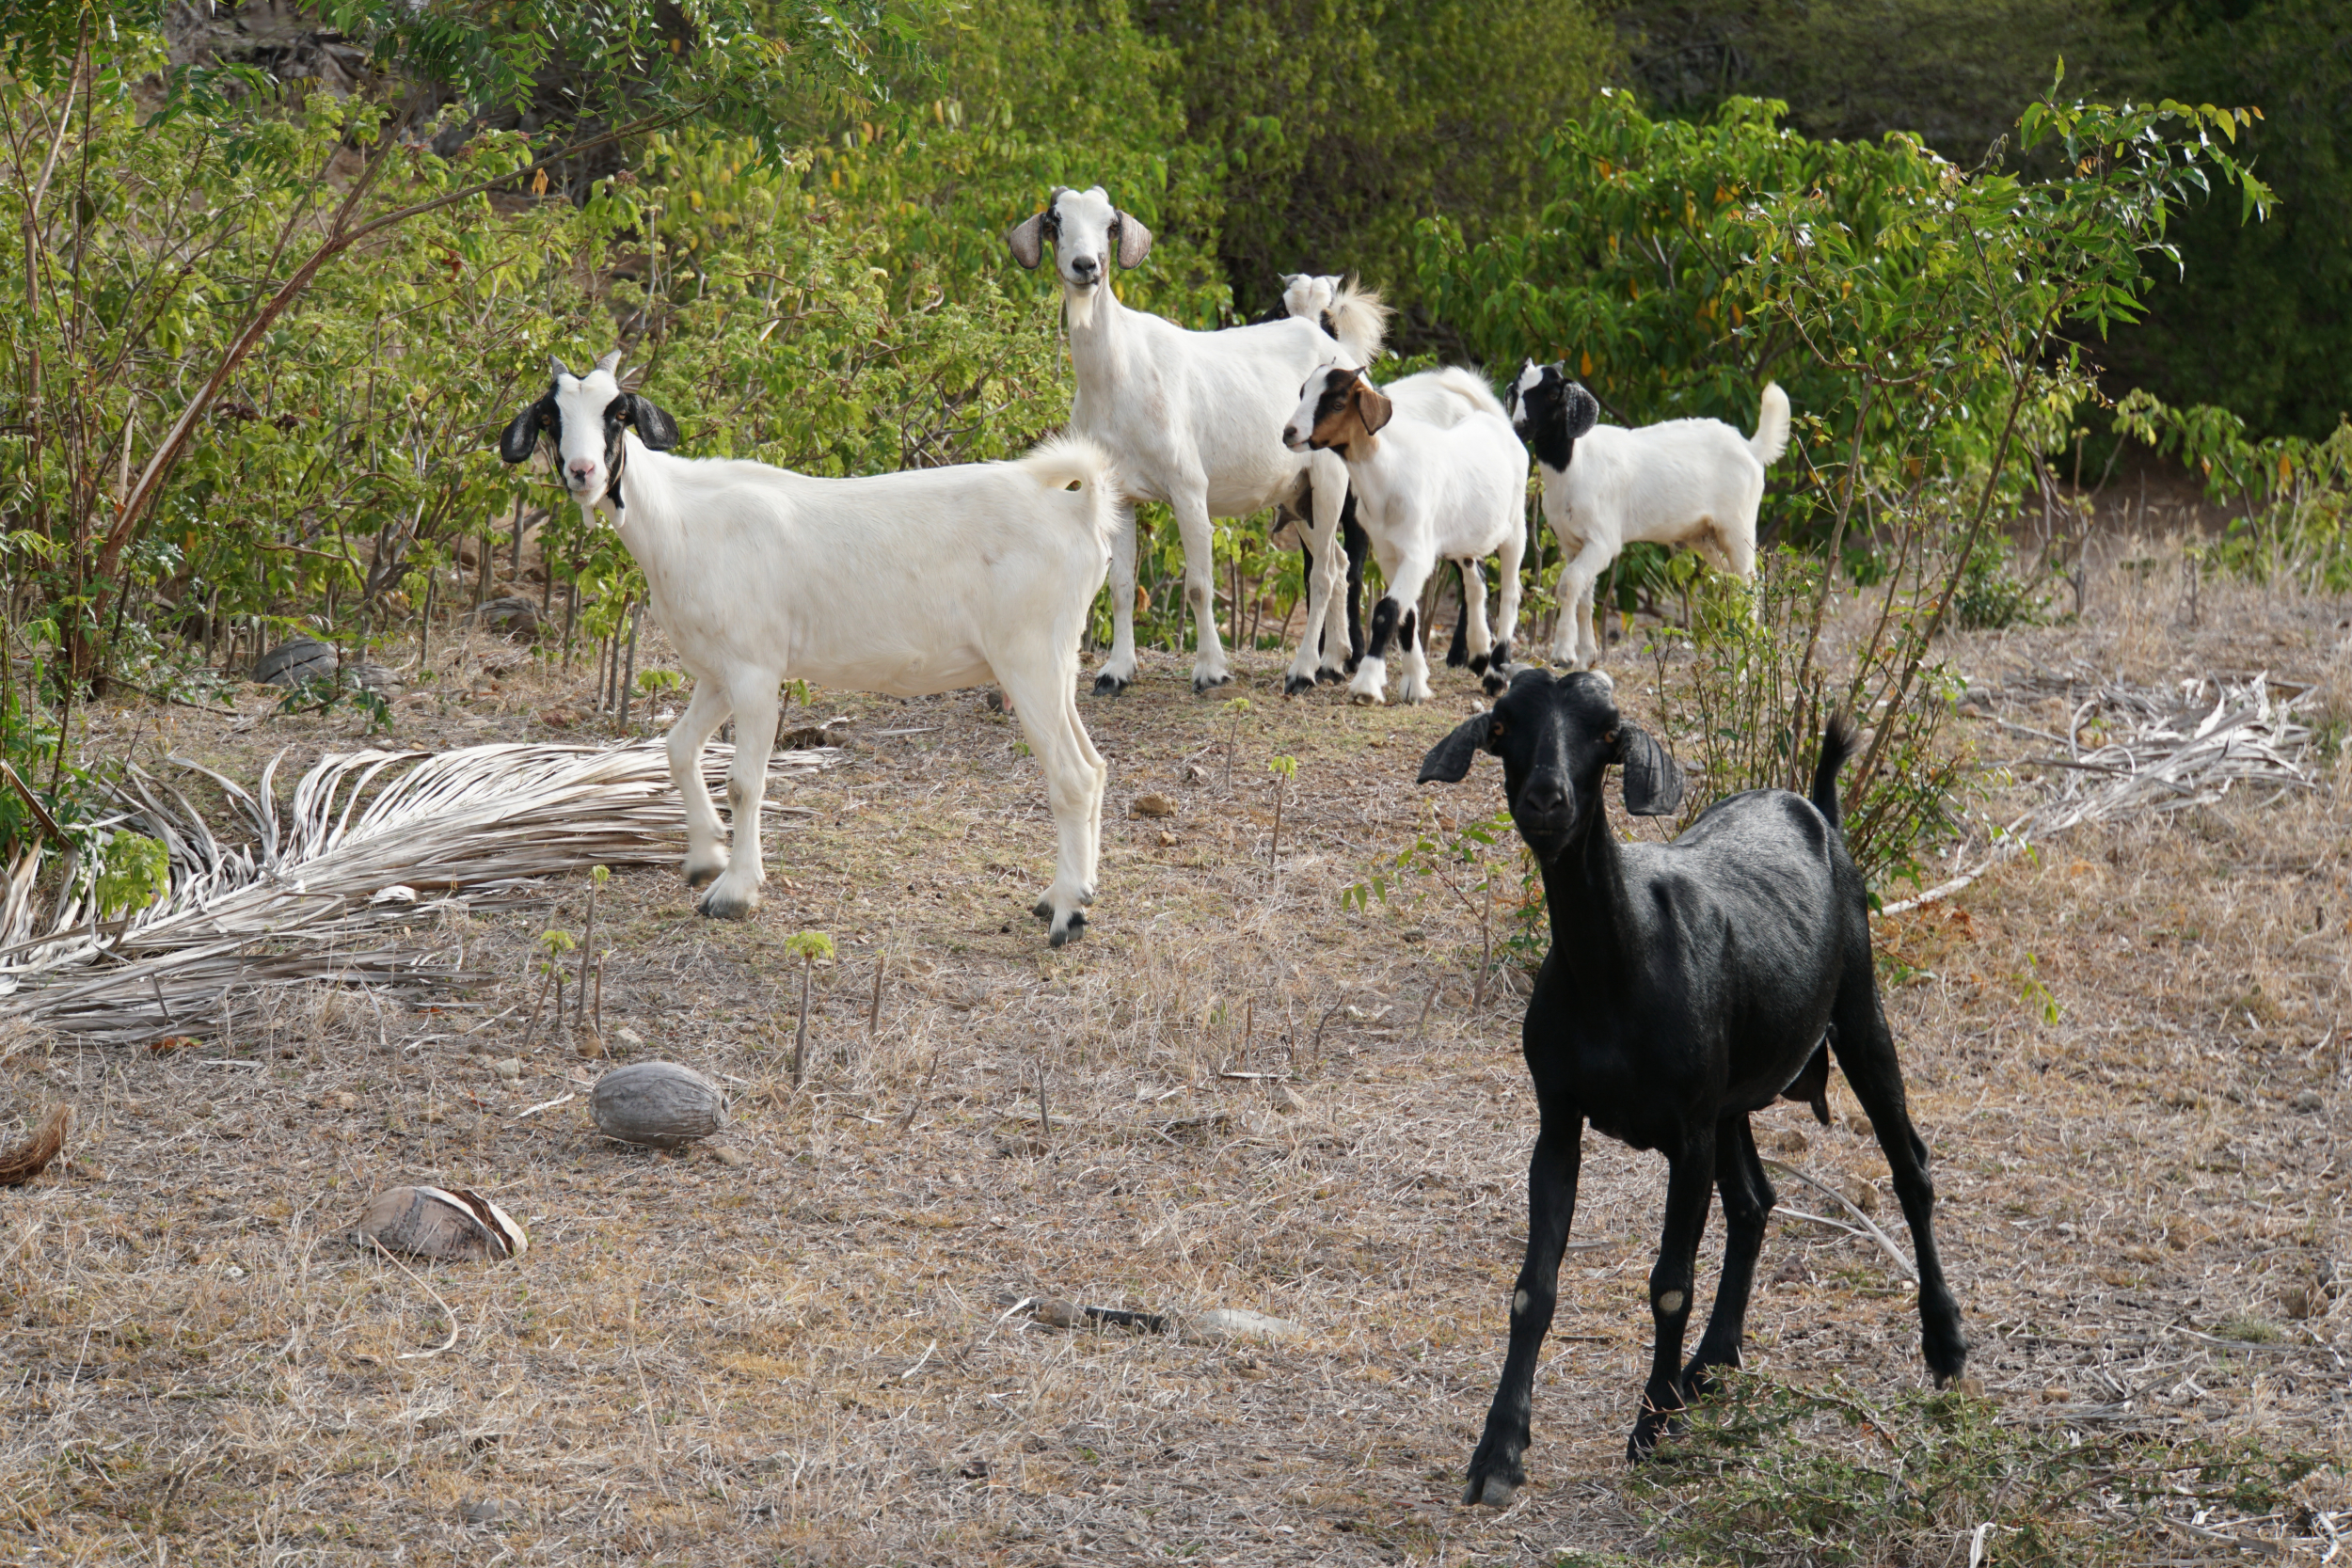 5. Goats at Indian Creek